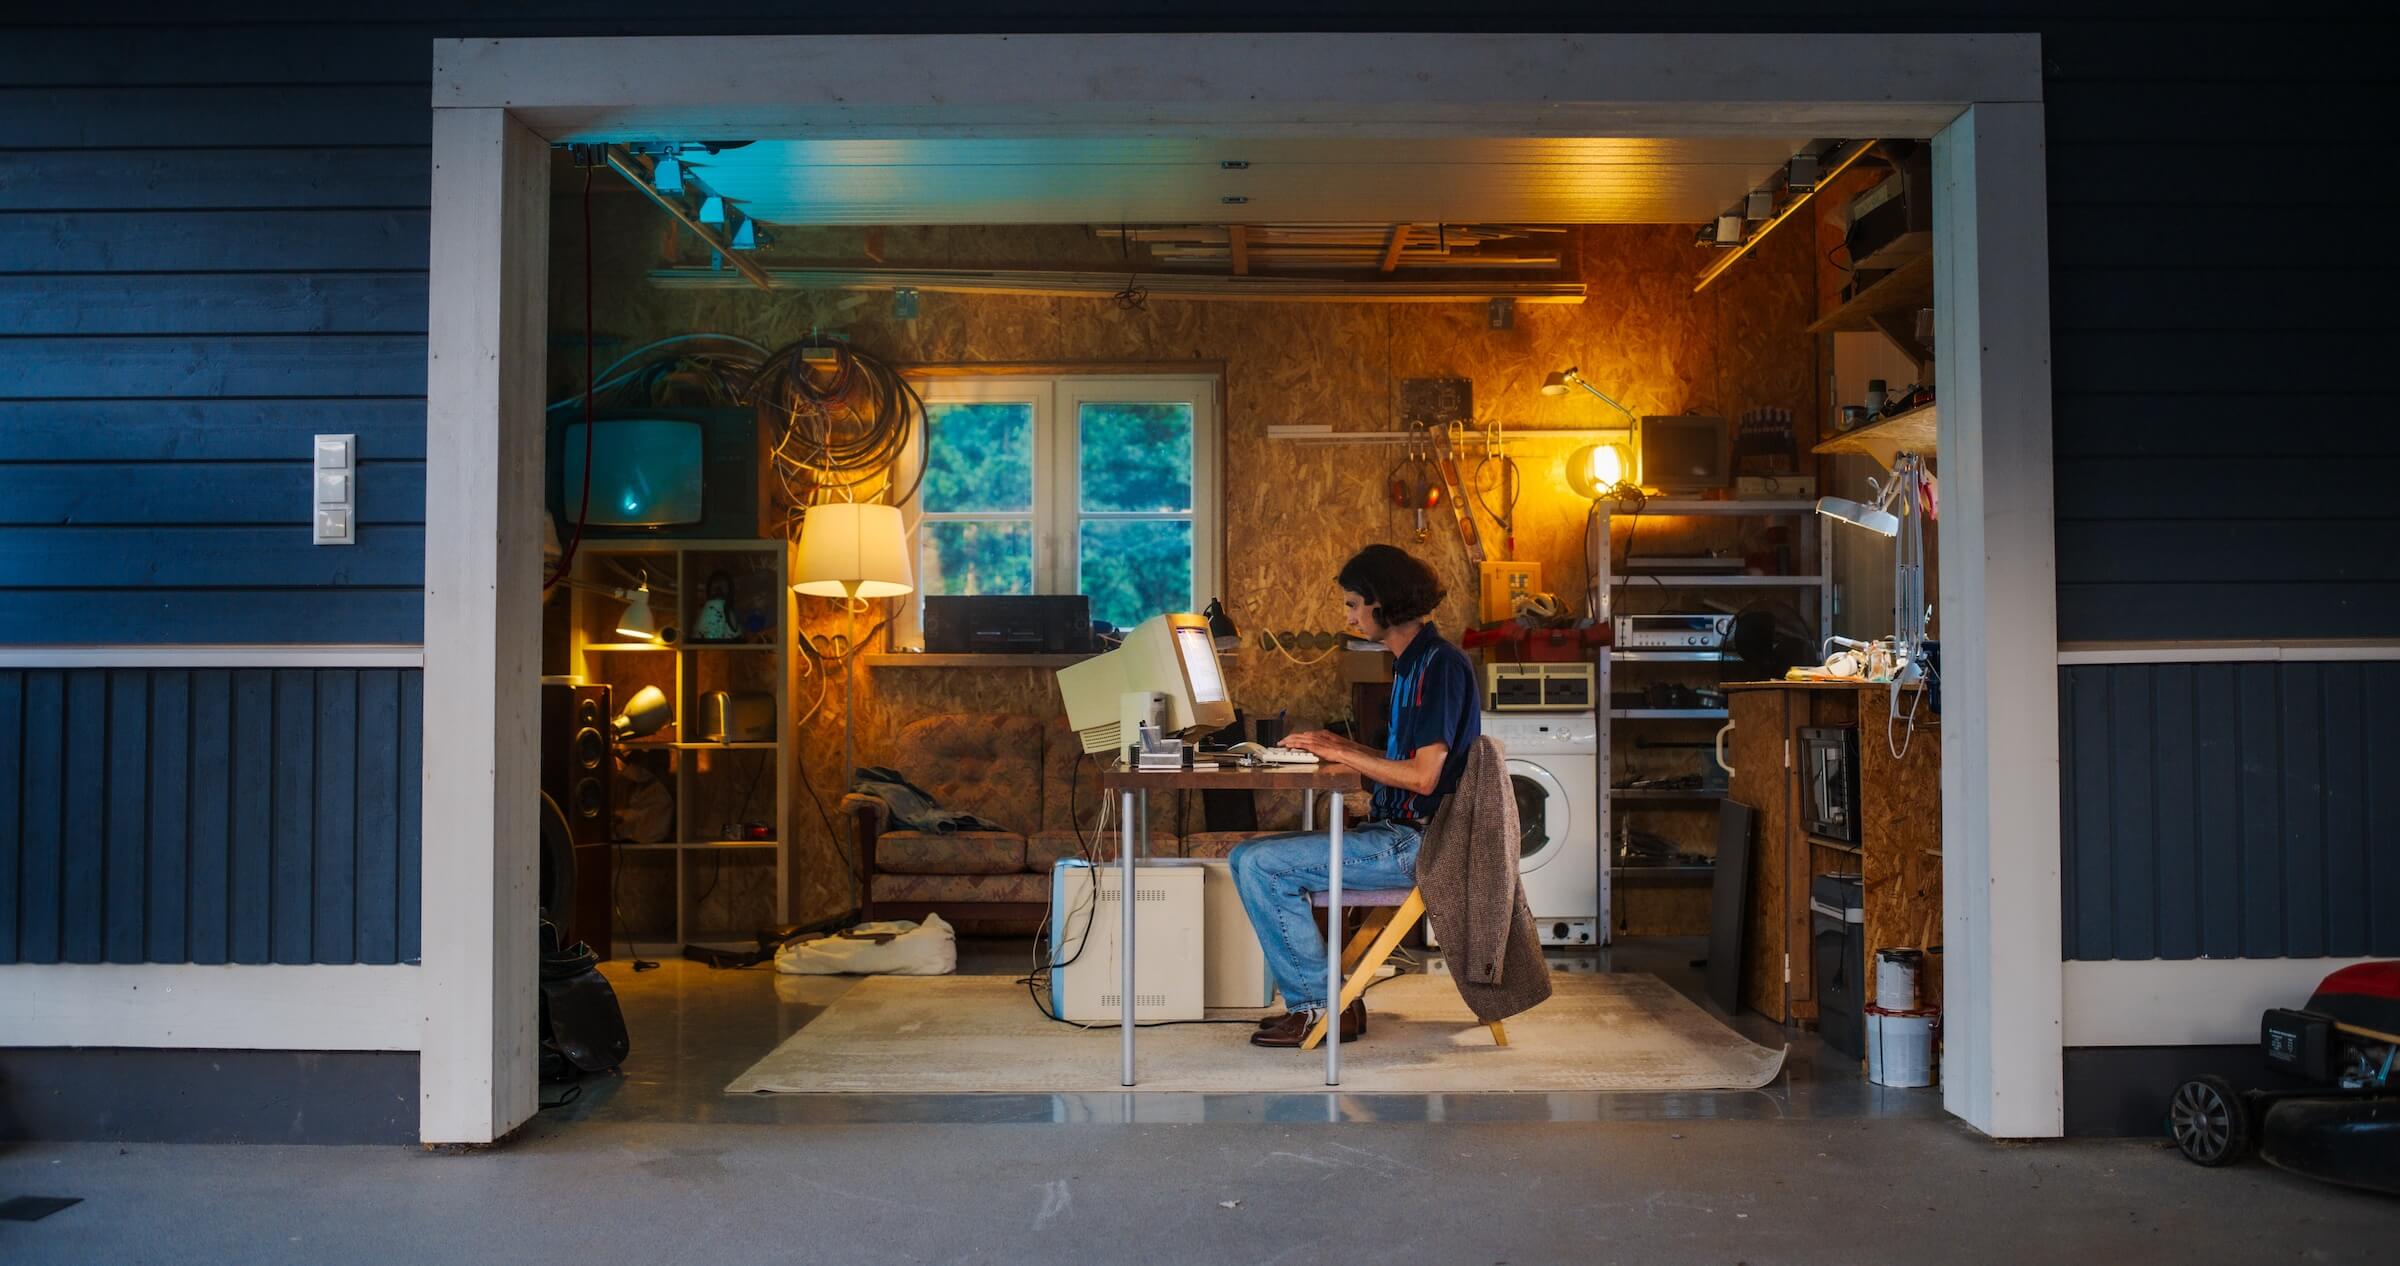 Kaukaski mężczyzna inżynier oprogramowania programujący na starym komputerze stacjonarnym w garażu retro